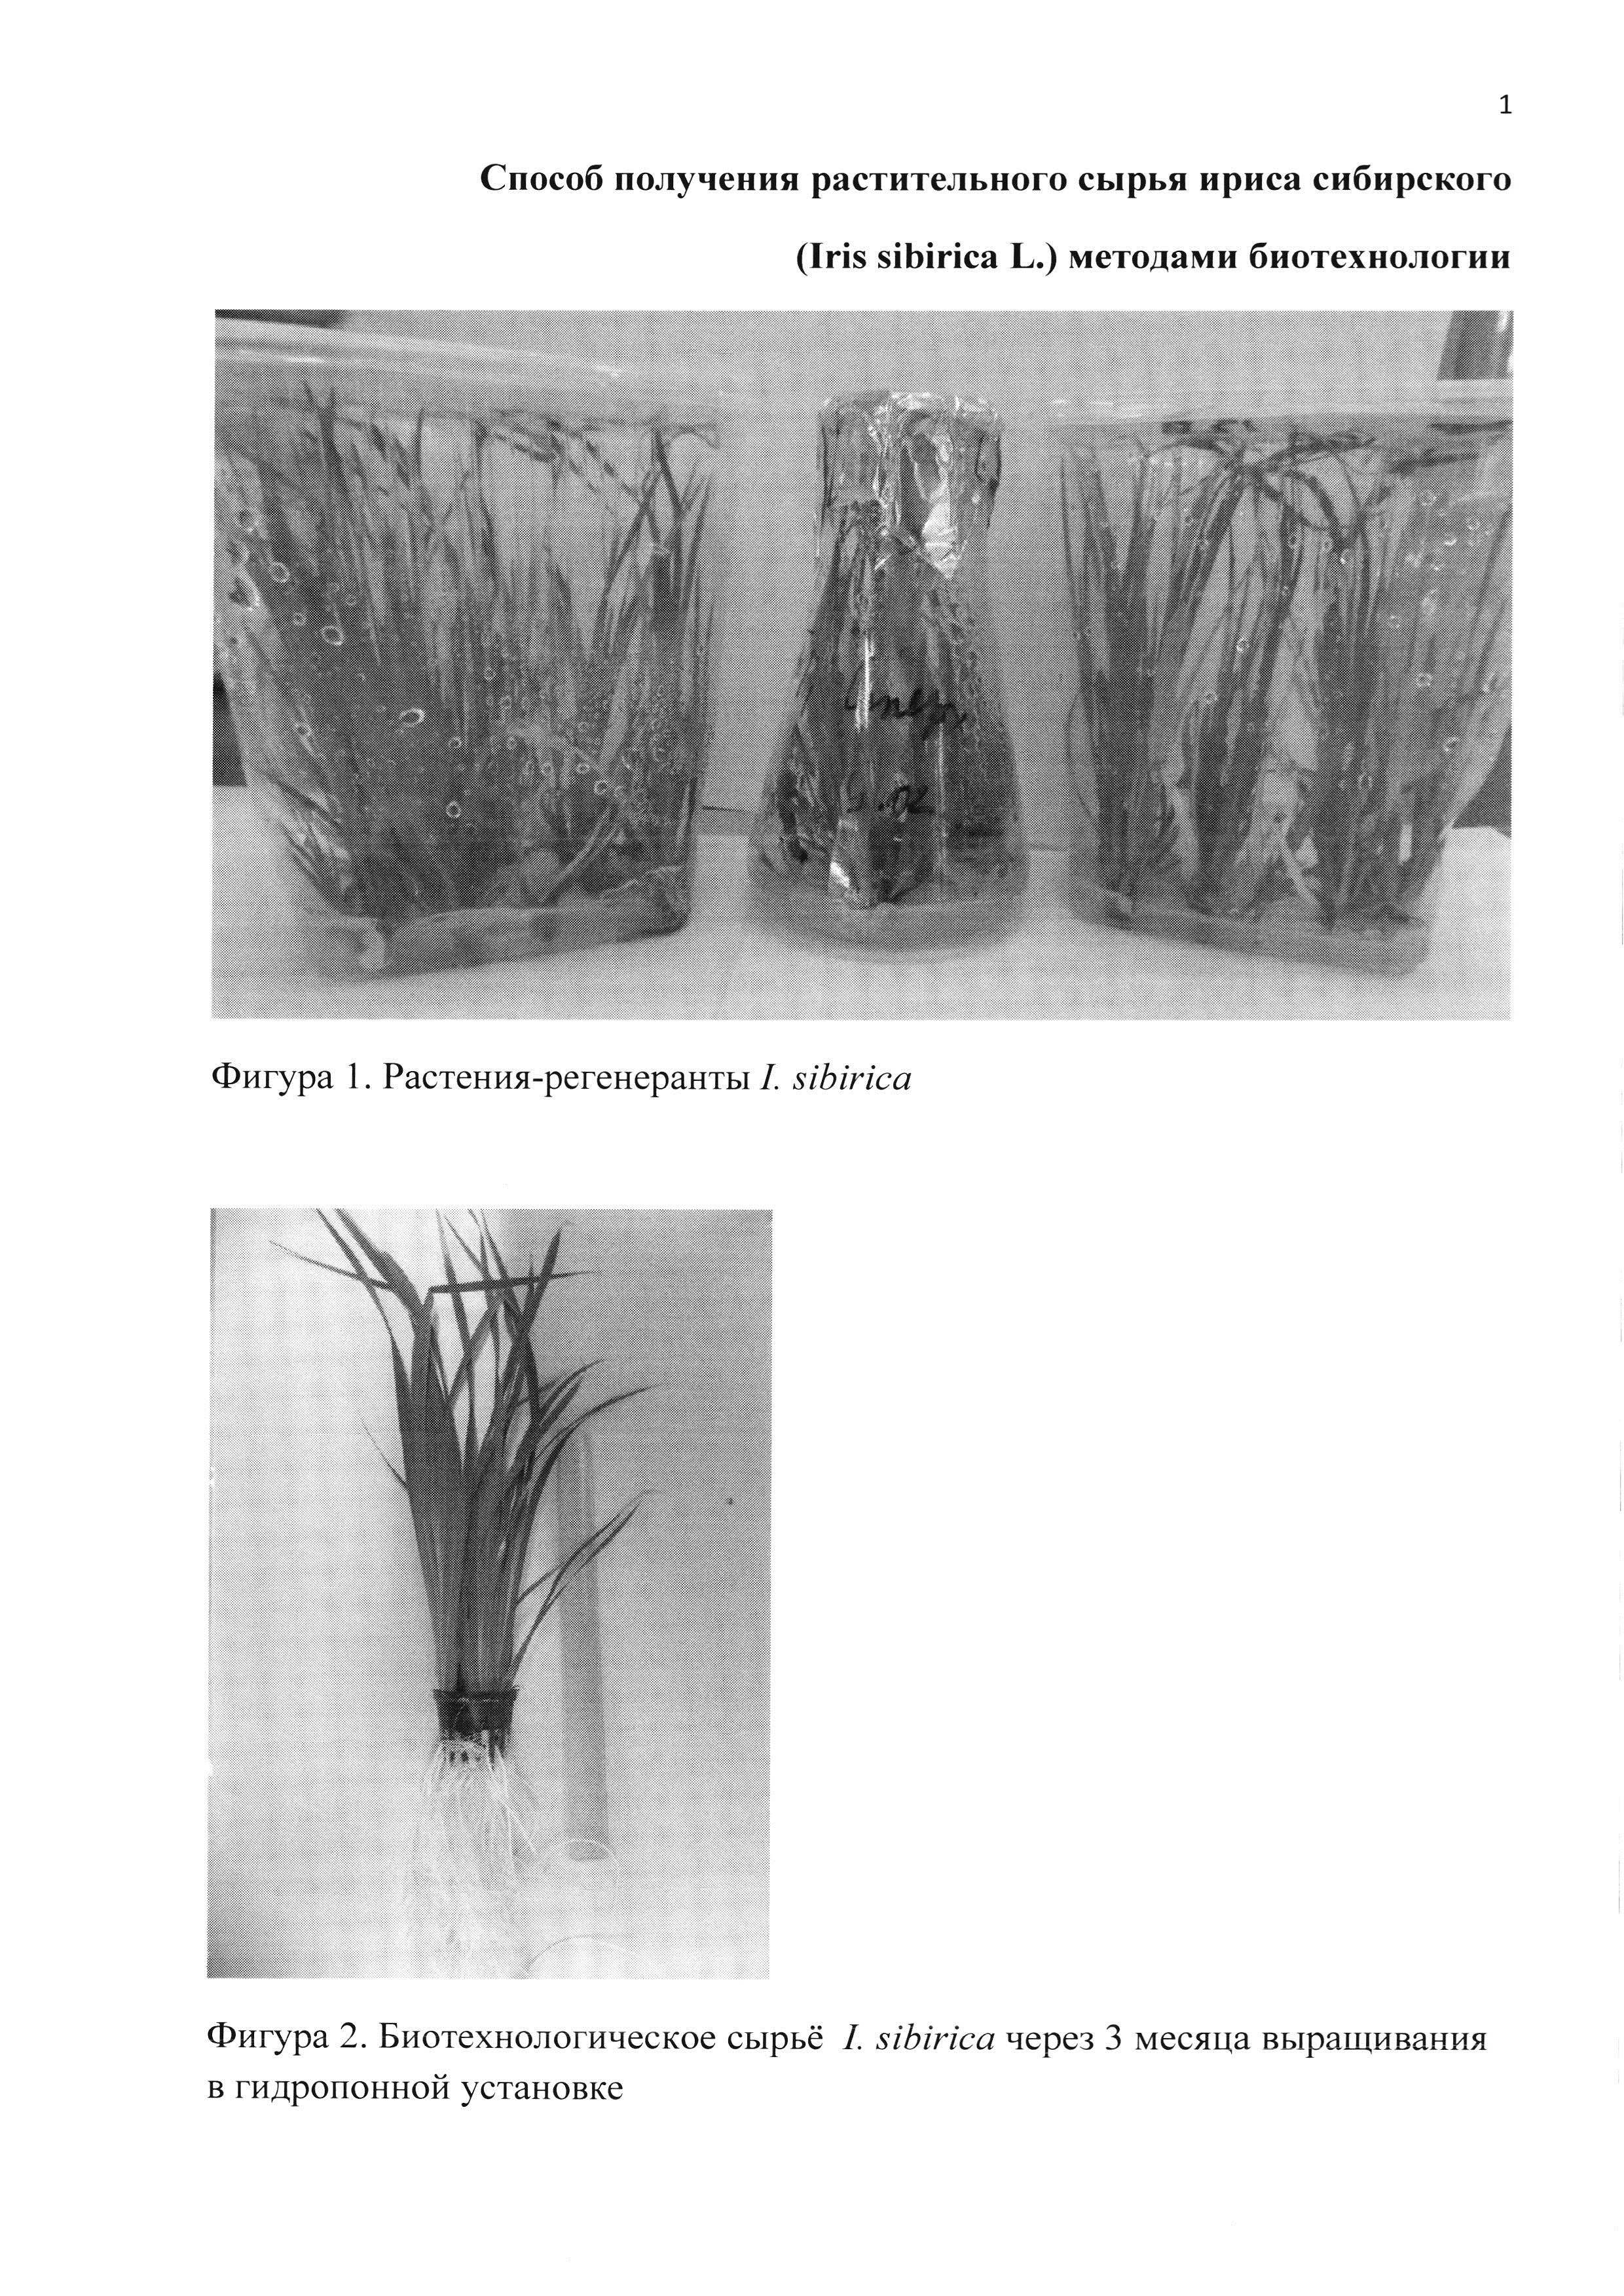 Способ получения растительного сырья ириса сибирского (Iris sibirica L.) методами биотехнологии